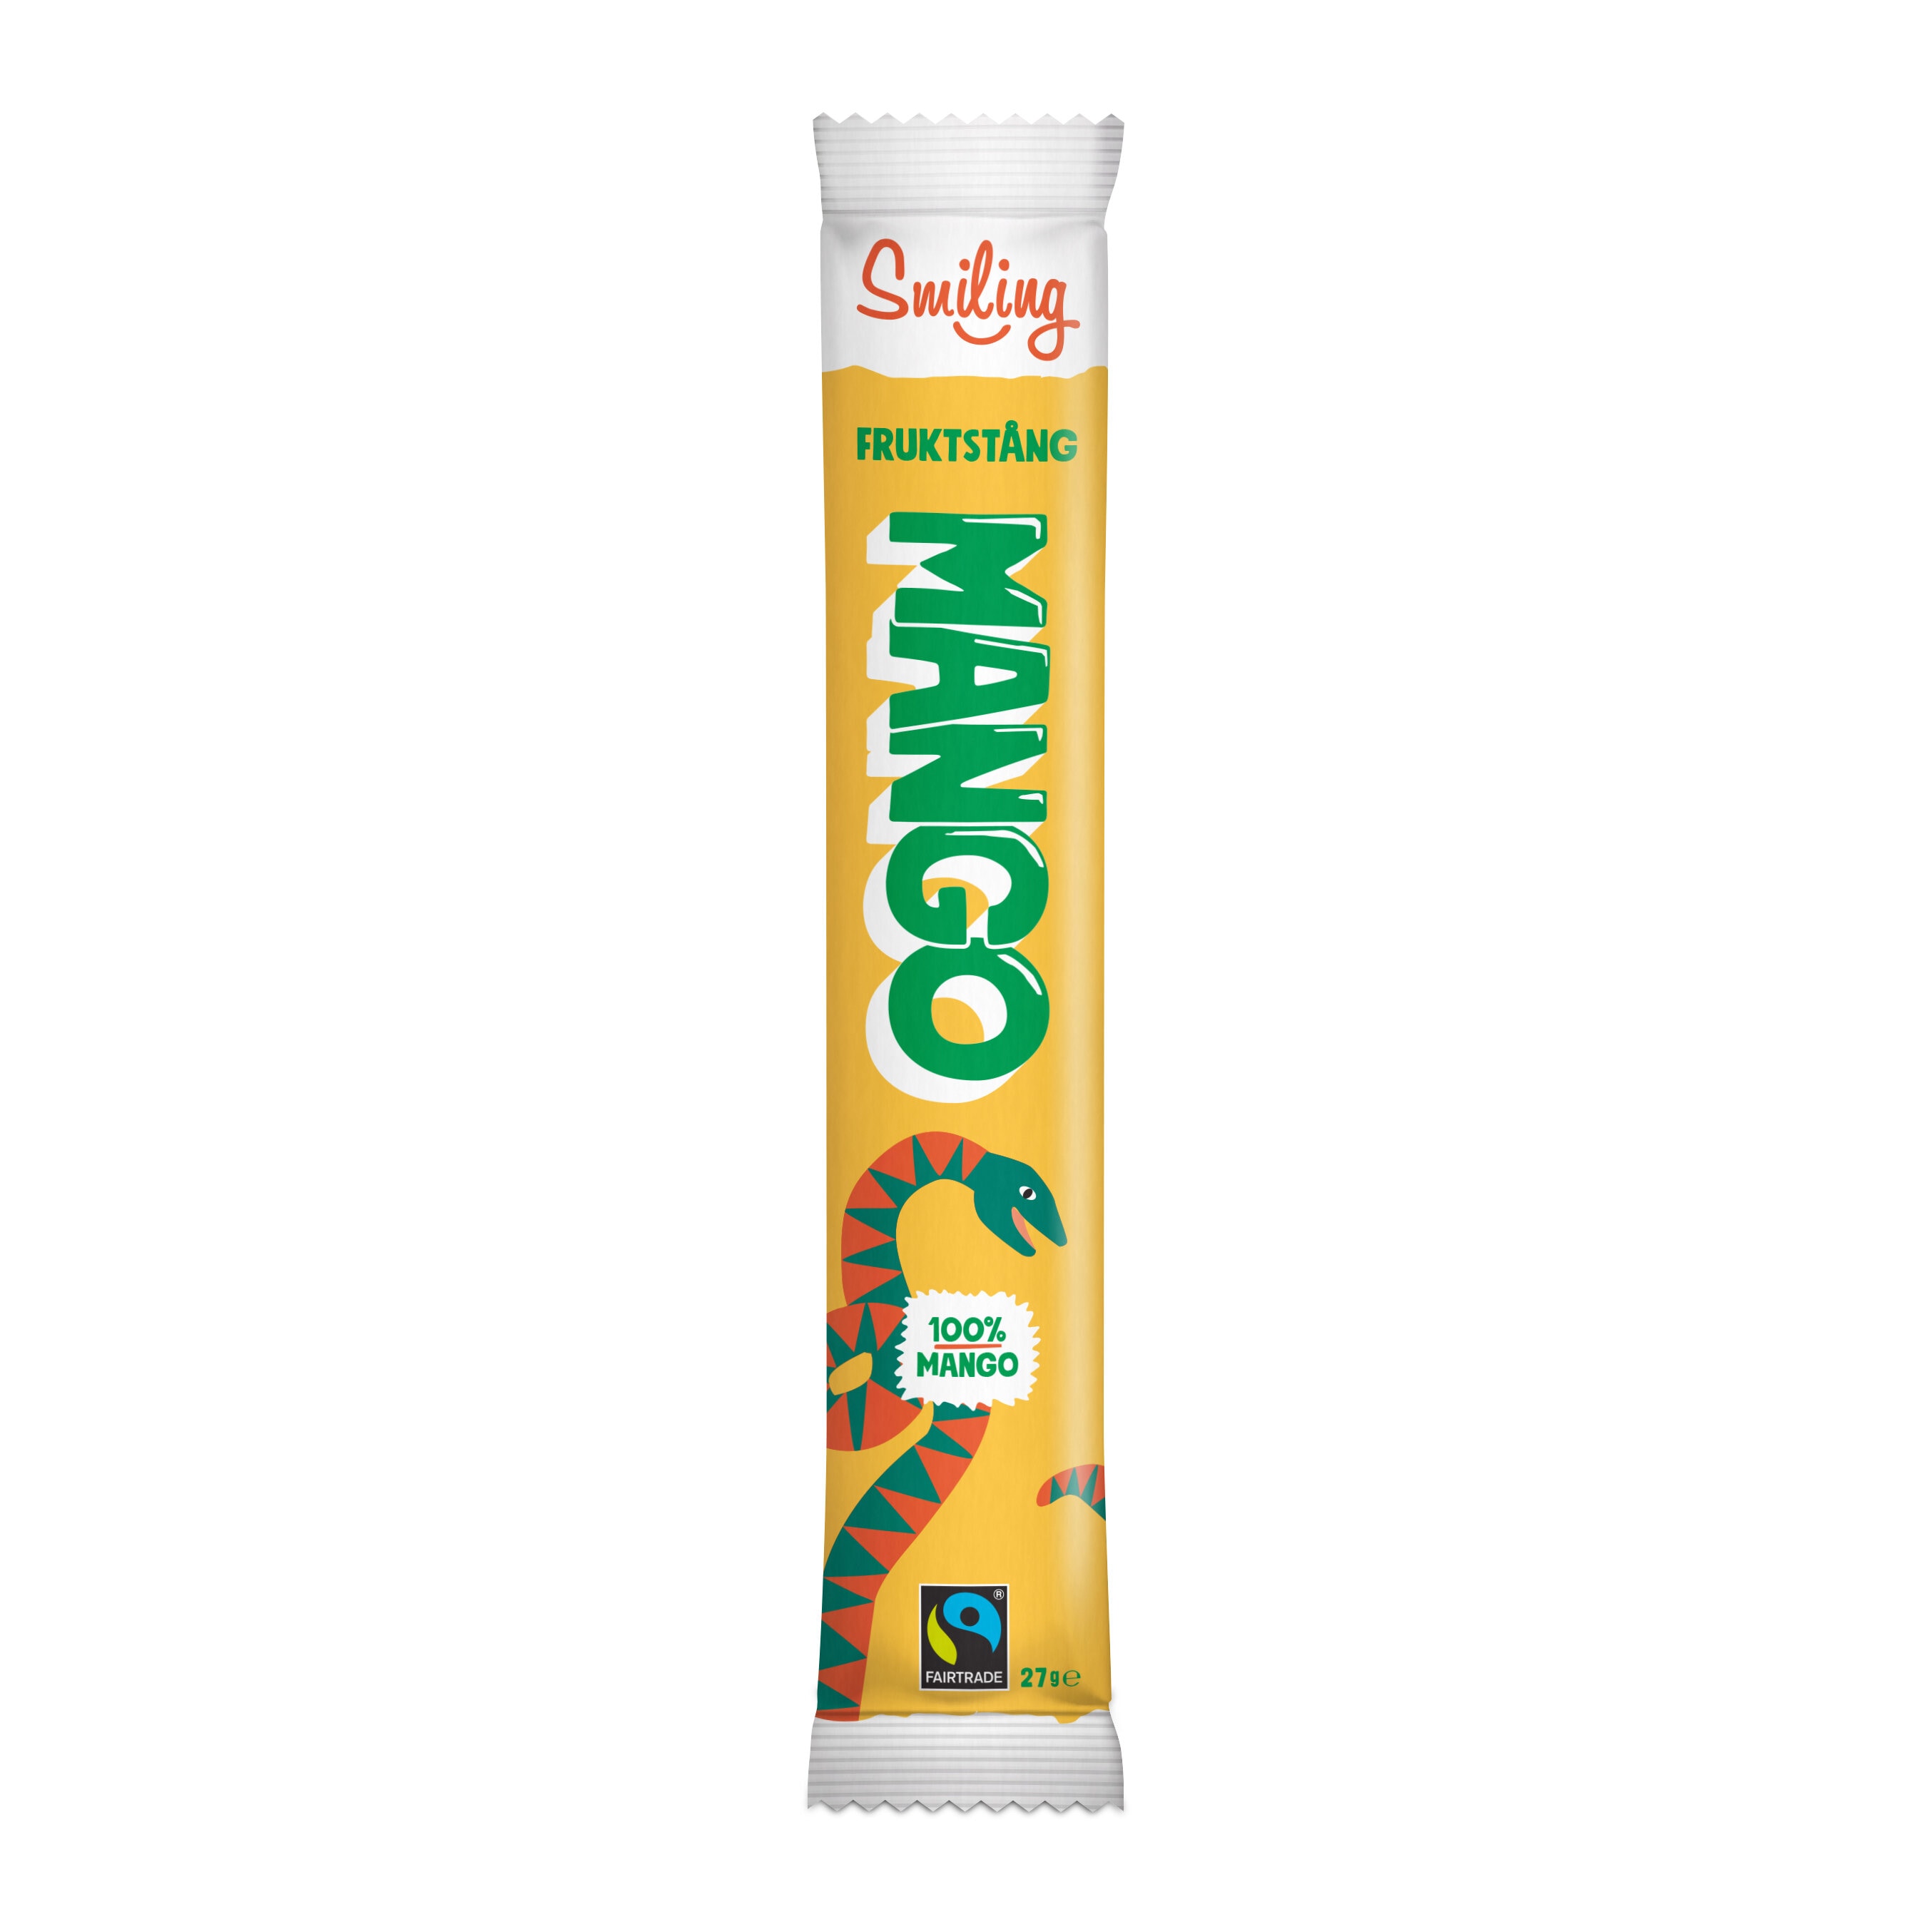 Fruktstång 100% Mango 27g 